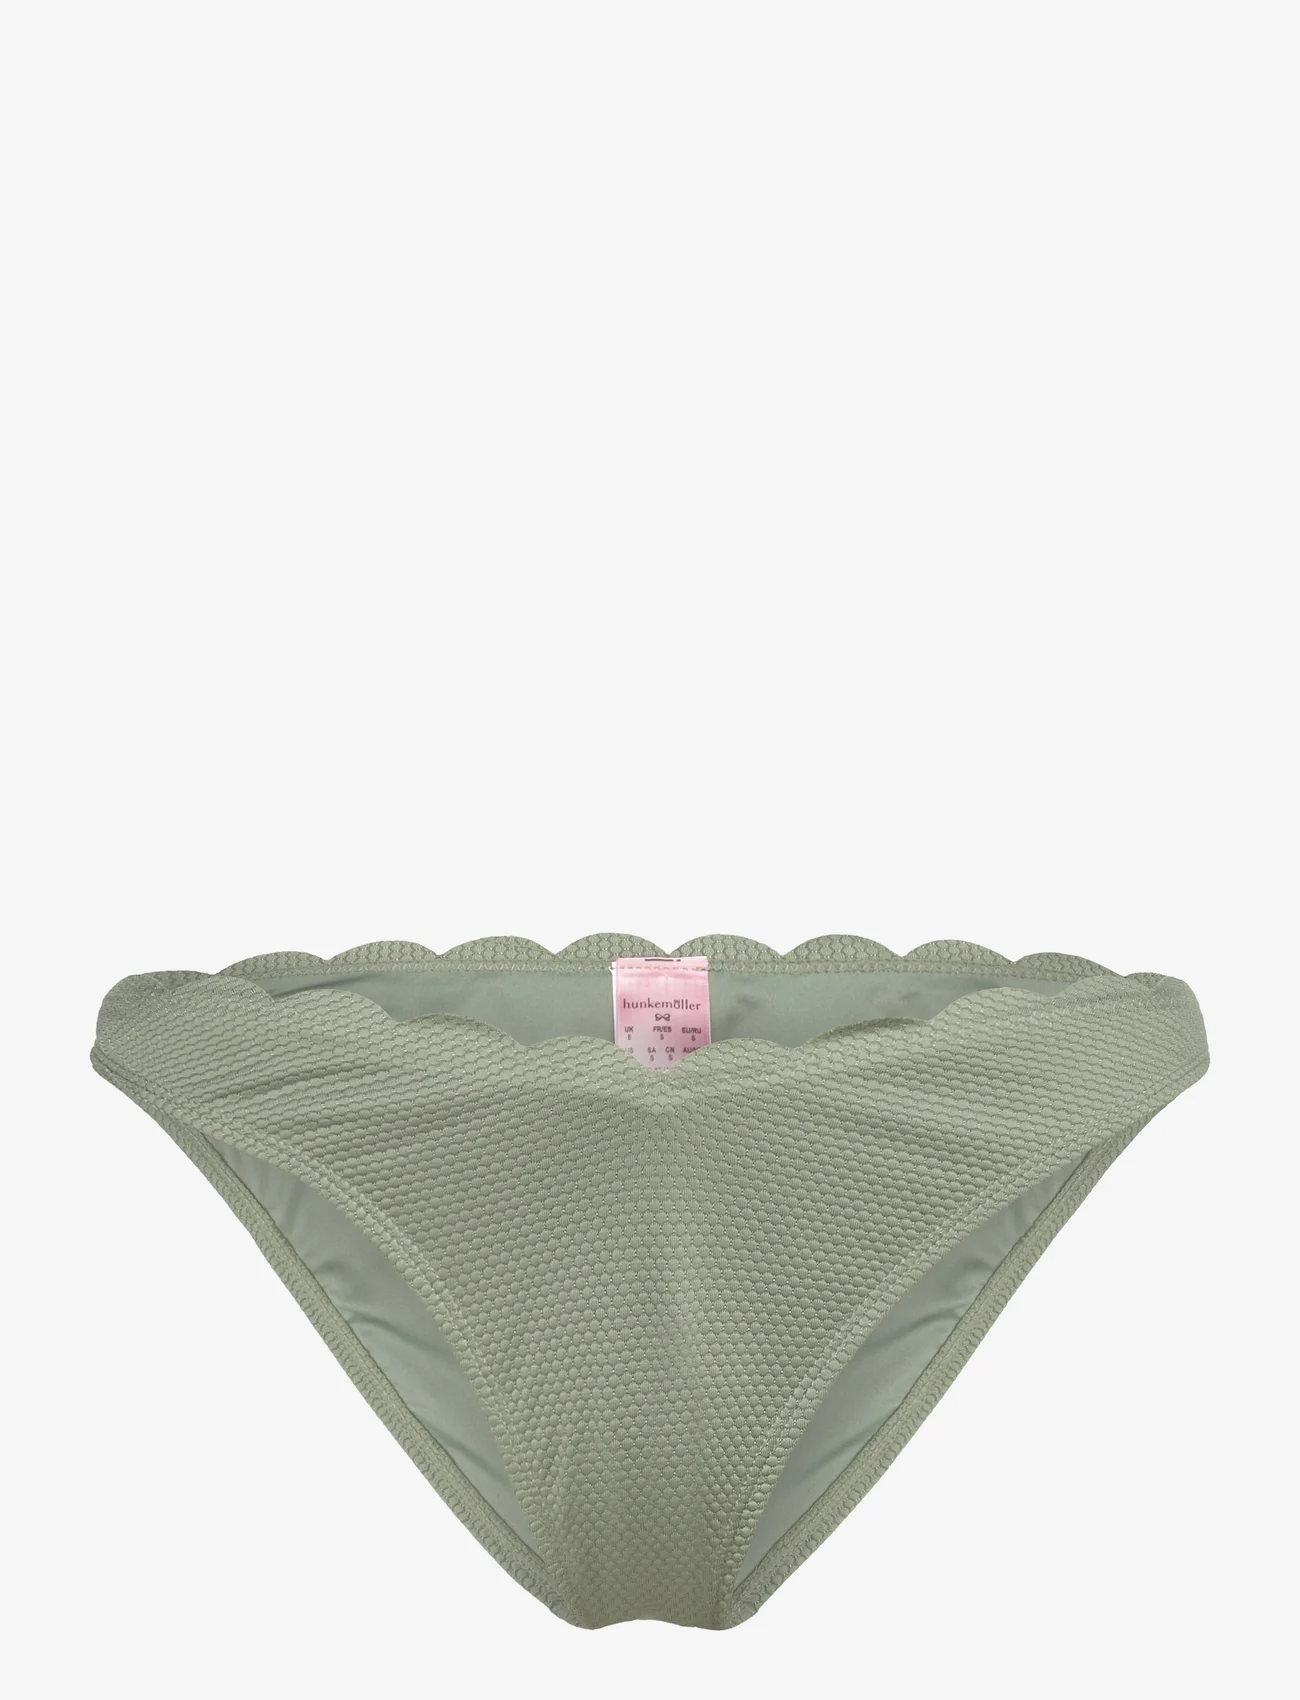 Hunkemöller - Scallop high leg r - majtki bikini - hedge green - 0